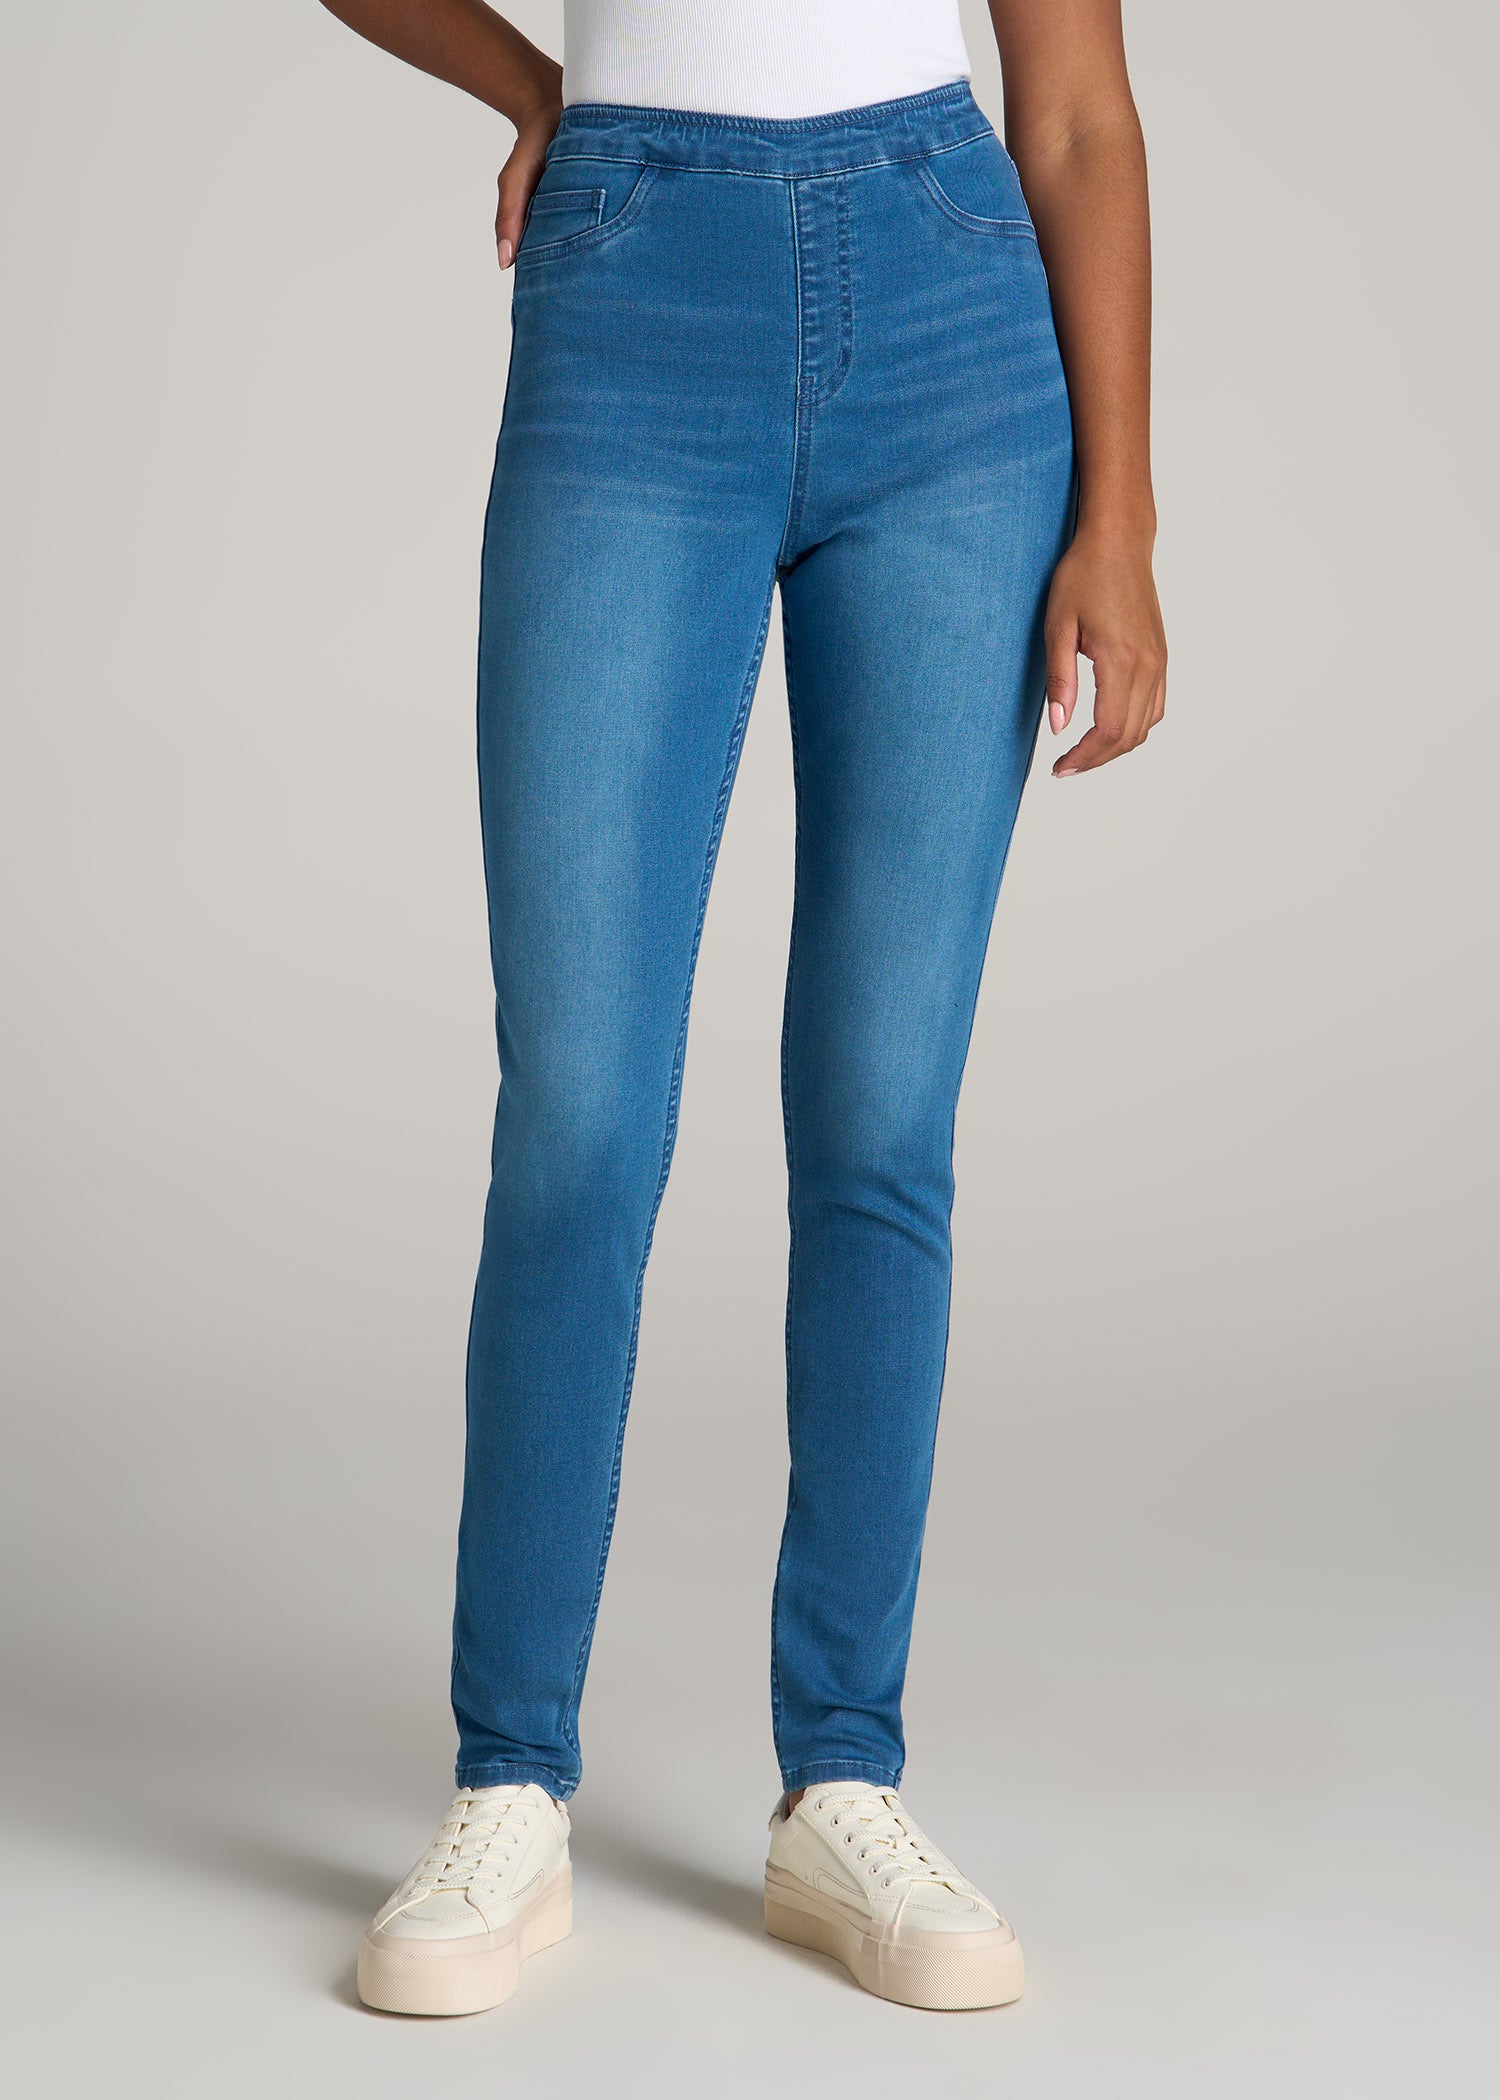 High Waisted Jeggings, Women's Jeans & Denim